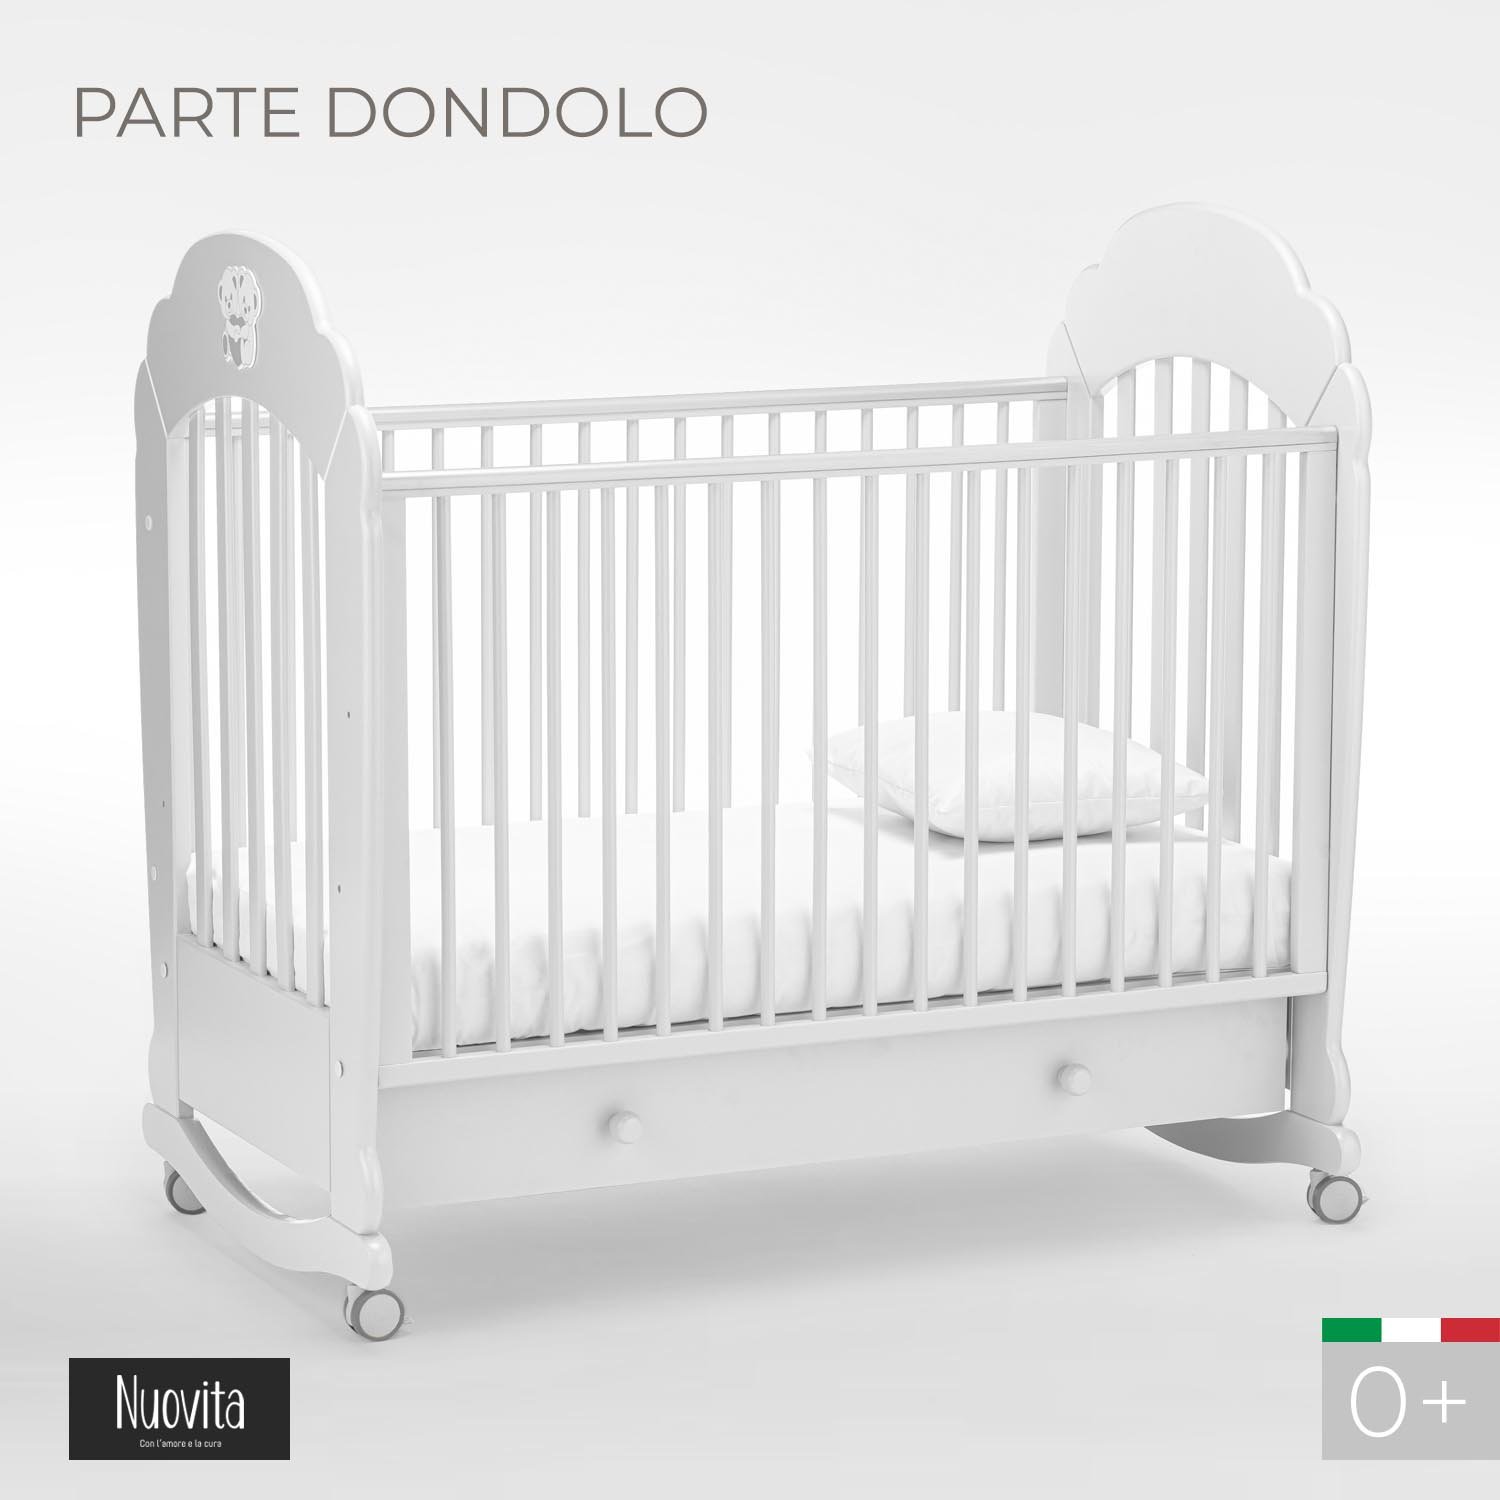 Кроватка Nuovita Parte Dondolo колесо-качалка bianco белый